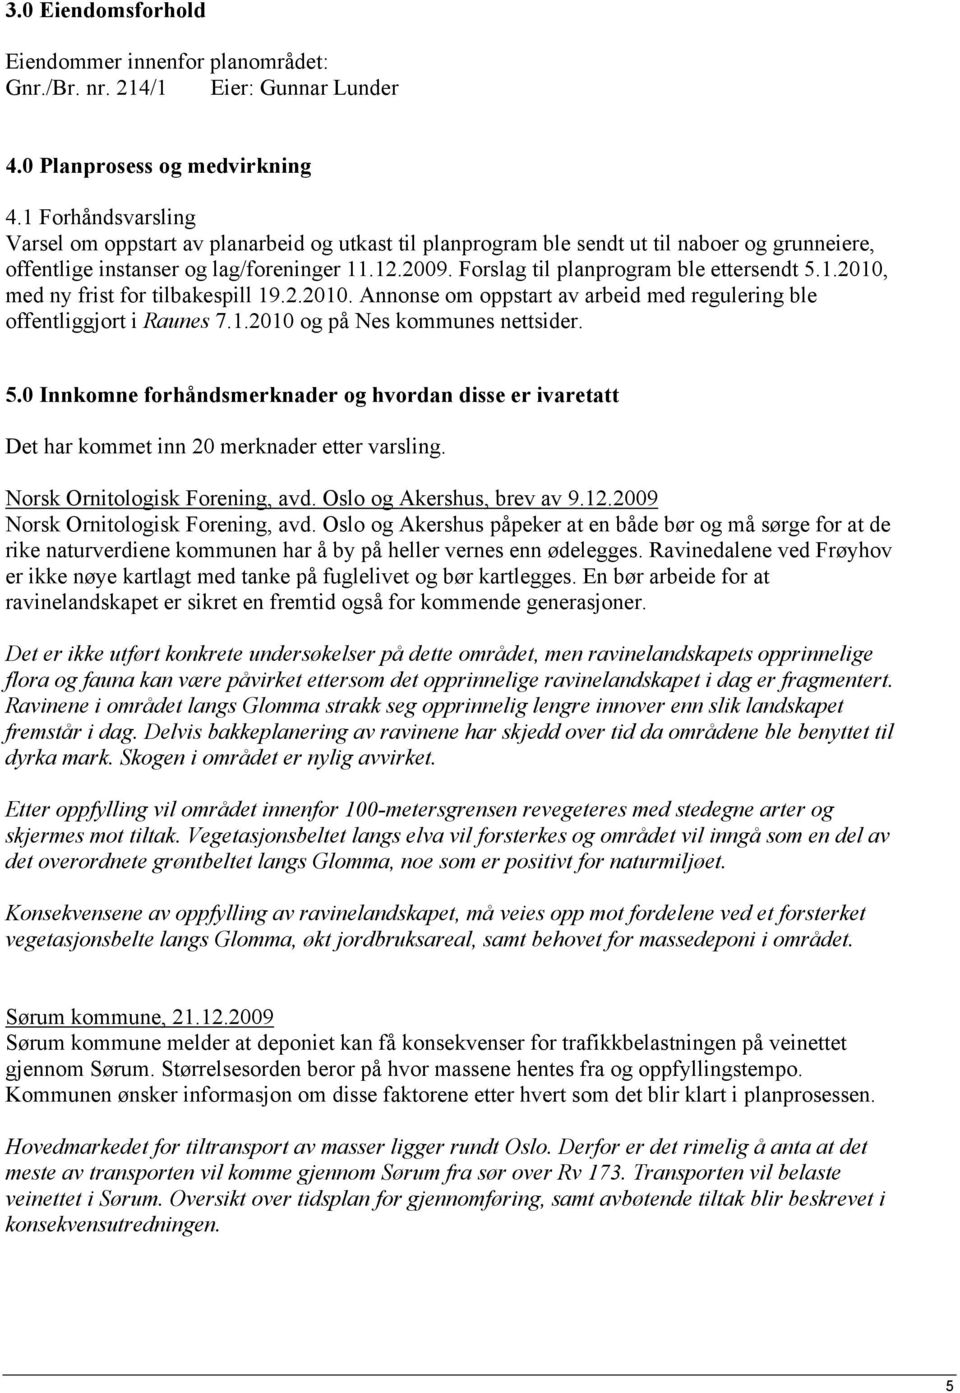 Forslag til planprogram ble ettersendt 5.1.2010, med ny frist for tilbakespill 19.2.2010. Annonse om oppstart av arbeid med regulering ble offentliggjort i Raunes 7.1.2010 og på Nes kommunes nettsider.